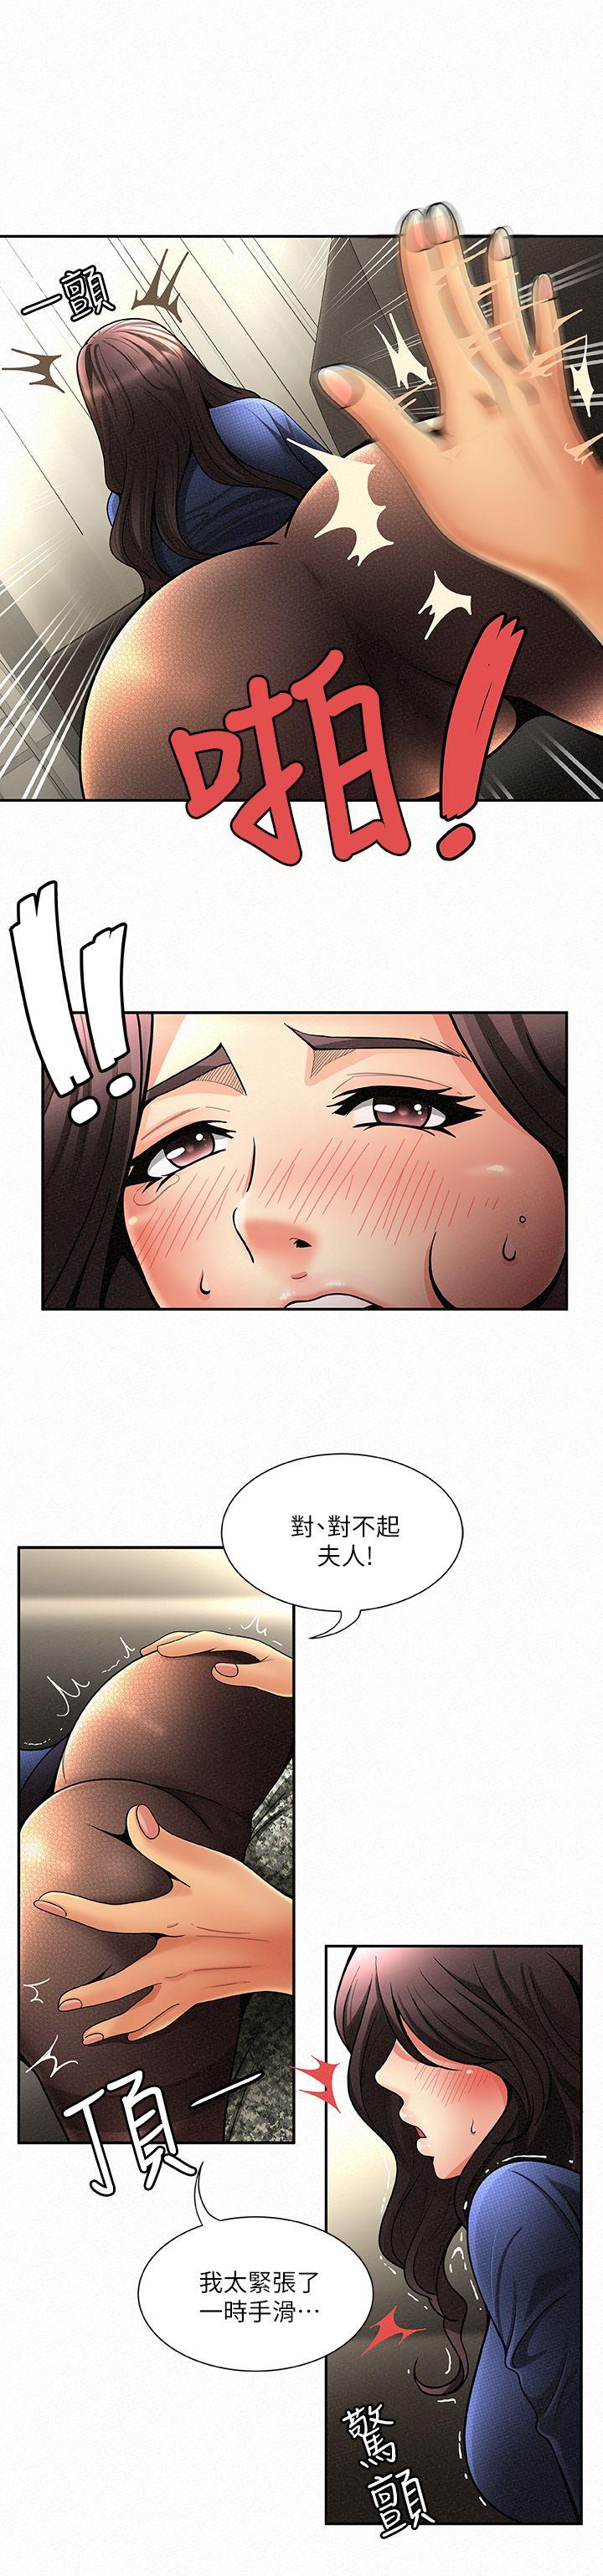 韩国污漫画 報告夫人 第2话-美艳夫人的诱惑 5